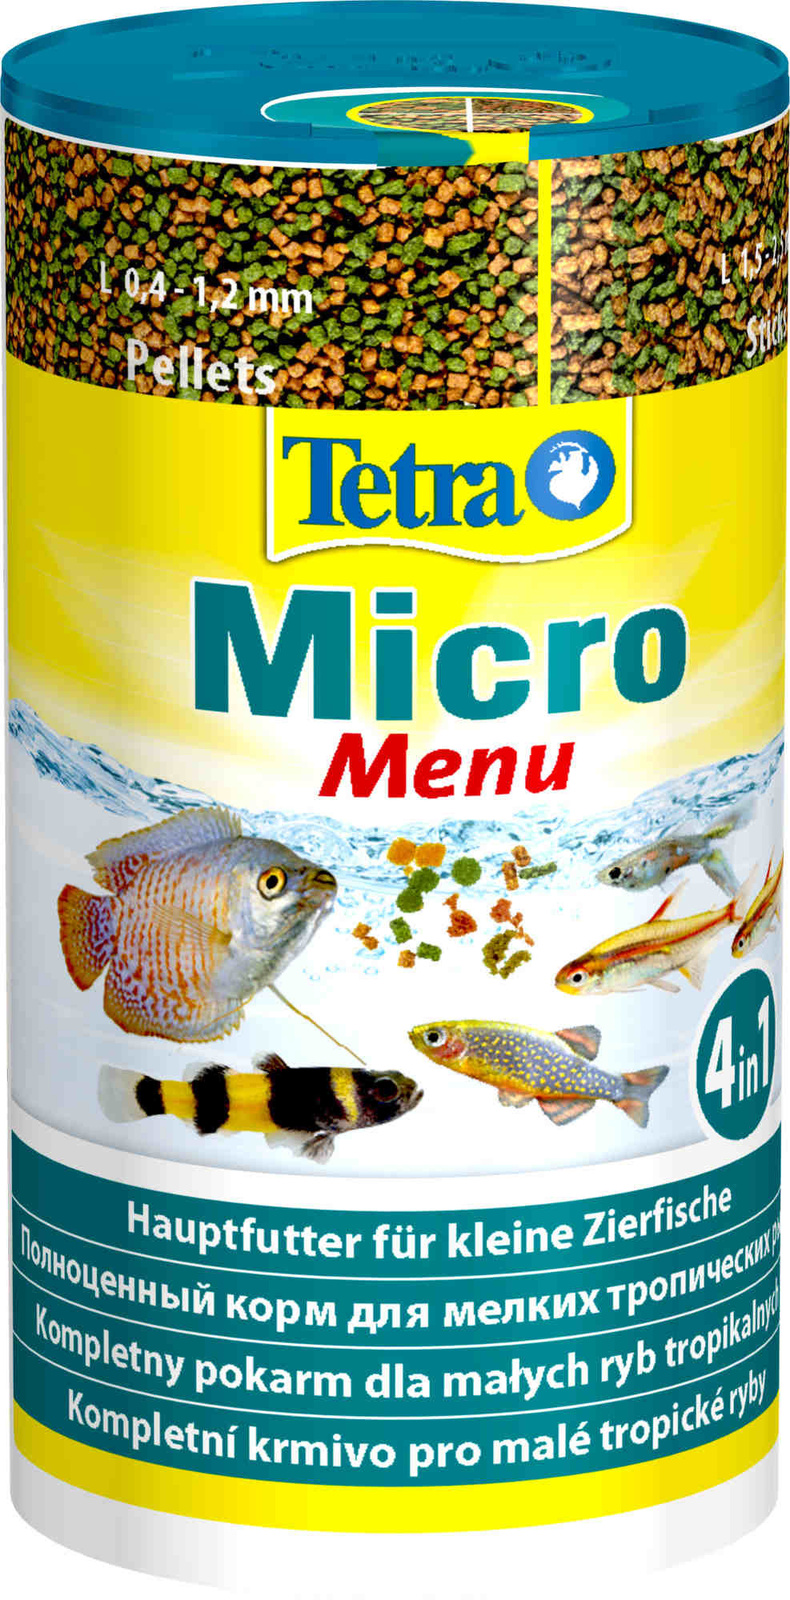 Tetra (корма) Tetra (корма) корм для всех видов мелких рыб, четыре вида корма (65 г) tetra корма tetra корма корм для всех видов мелких рыб микрогранулы 45 г